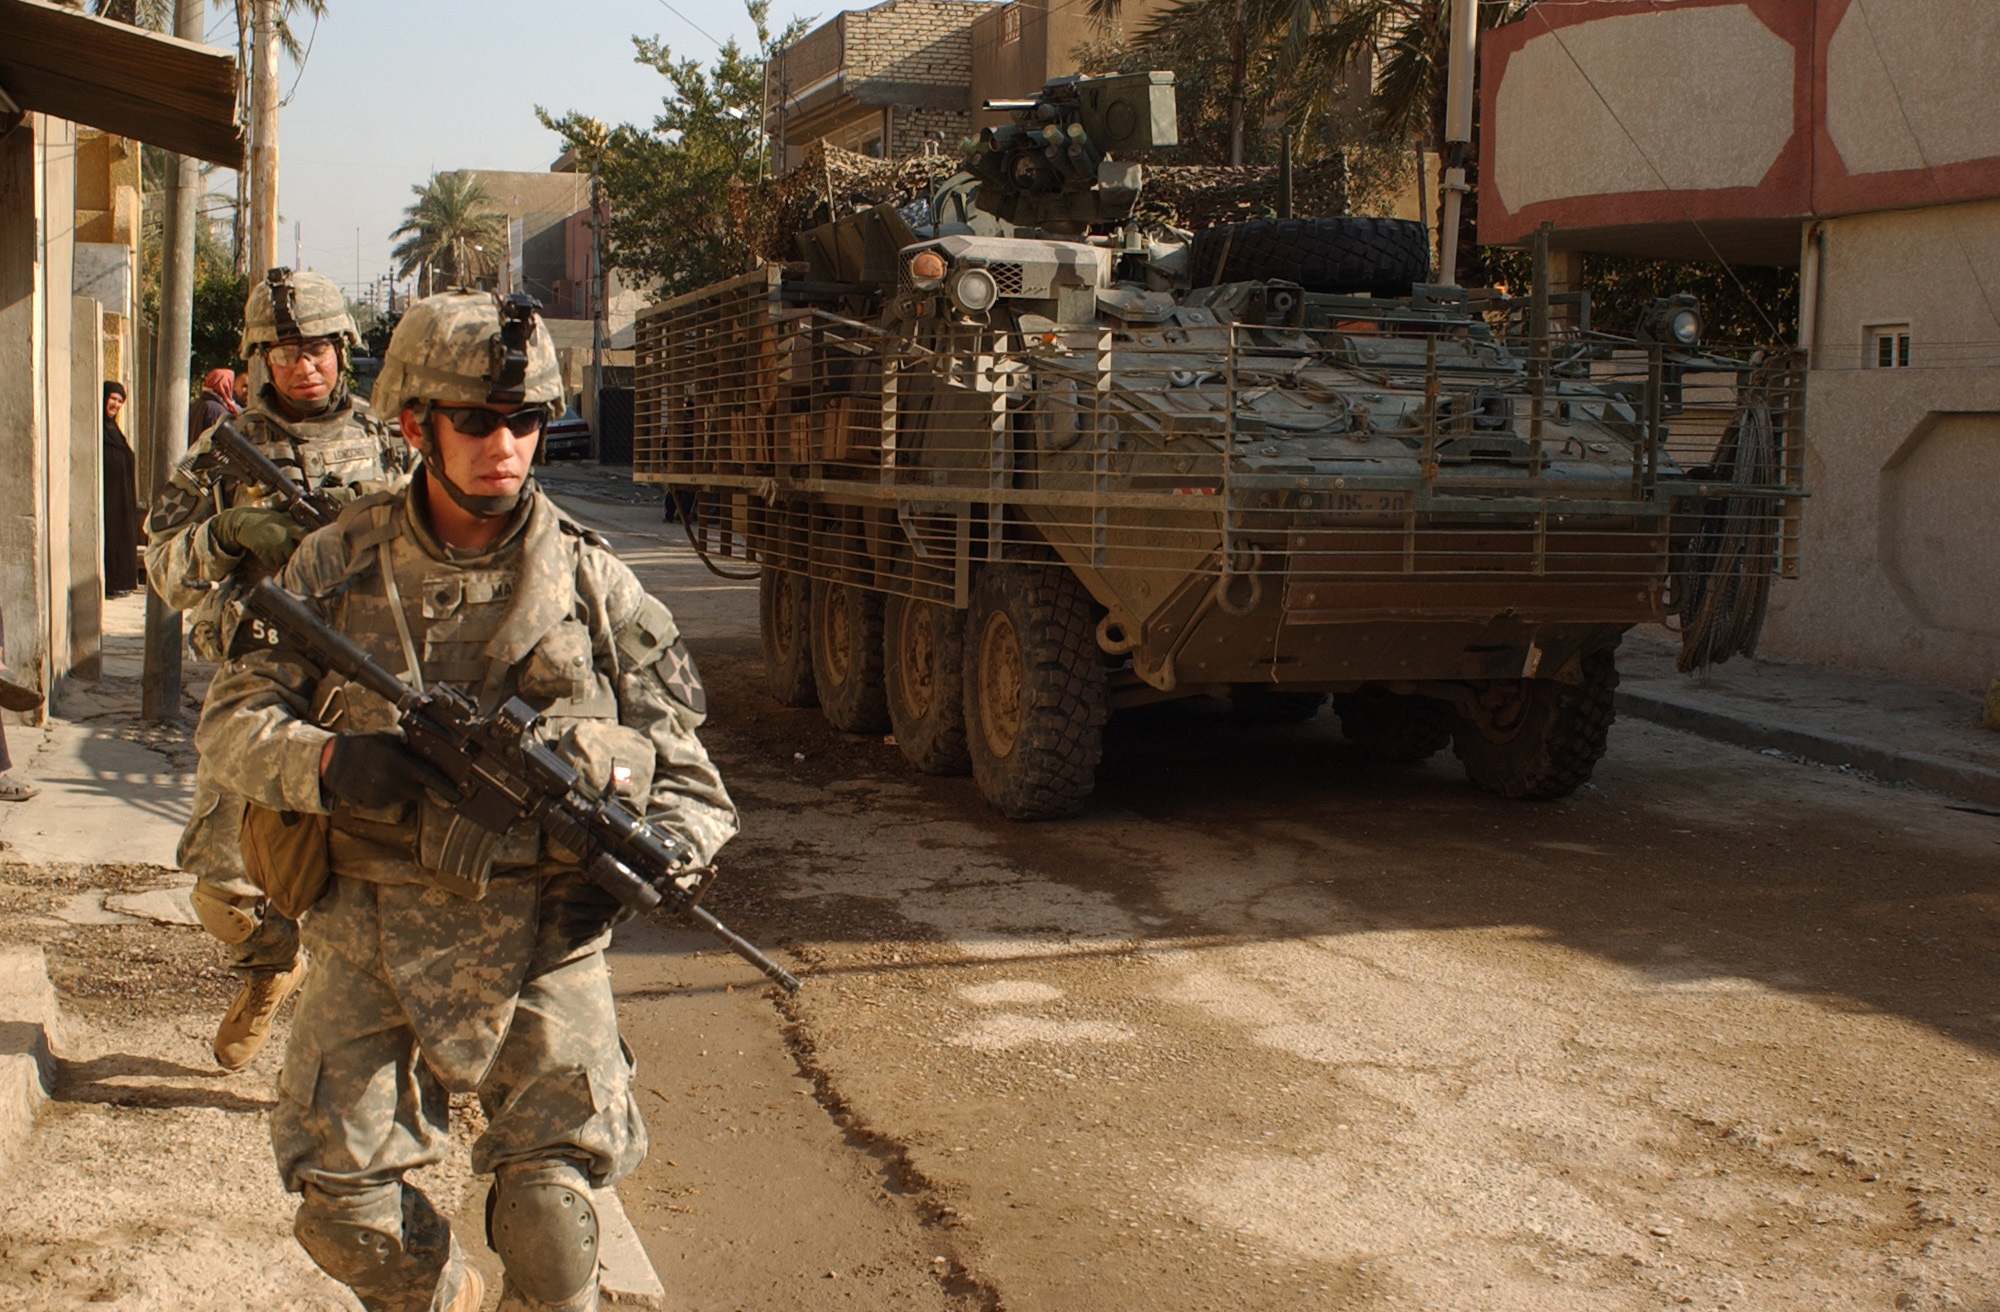 Нато в ираке. Ирак спецназ армия США 2003. Солдаты армии США В Ираке. Снаряжение солдат США В Ираке 2003.